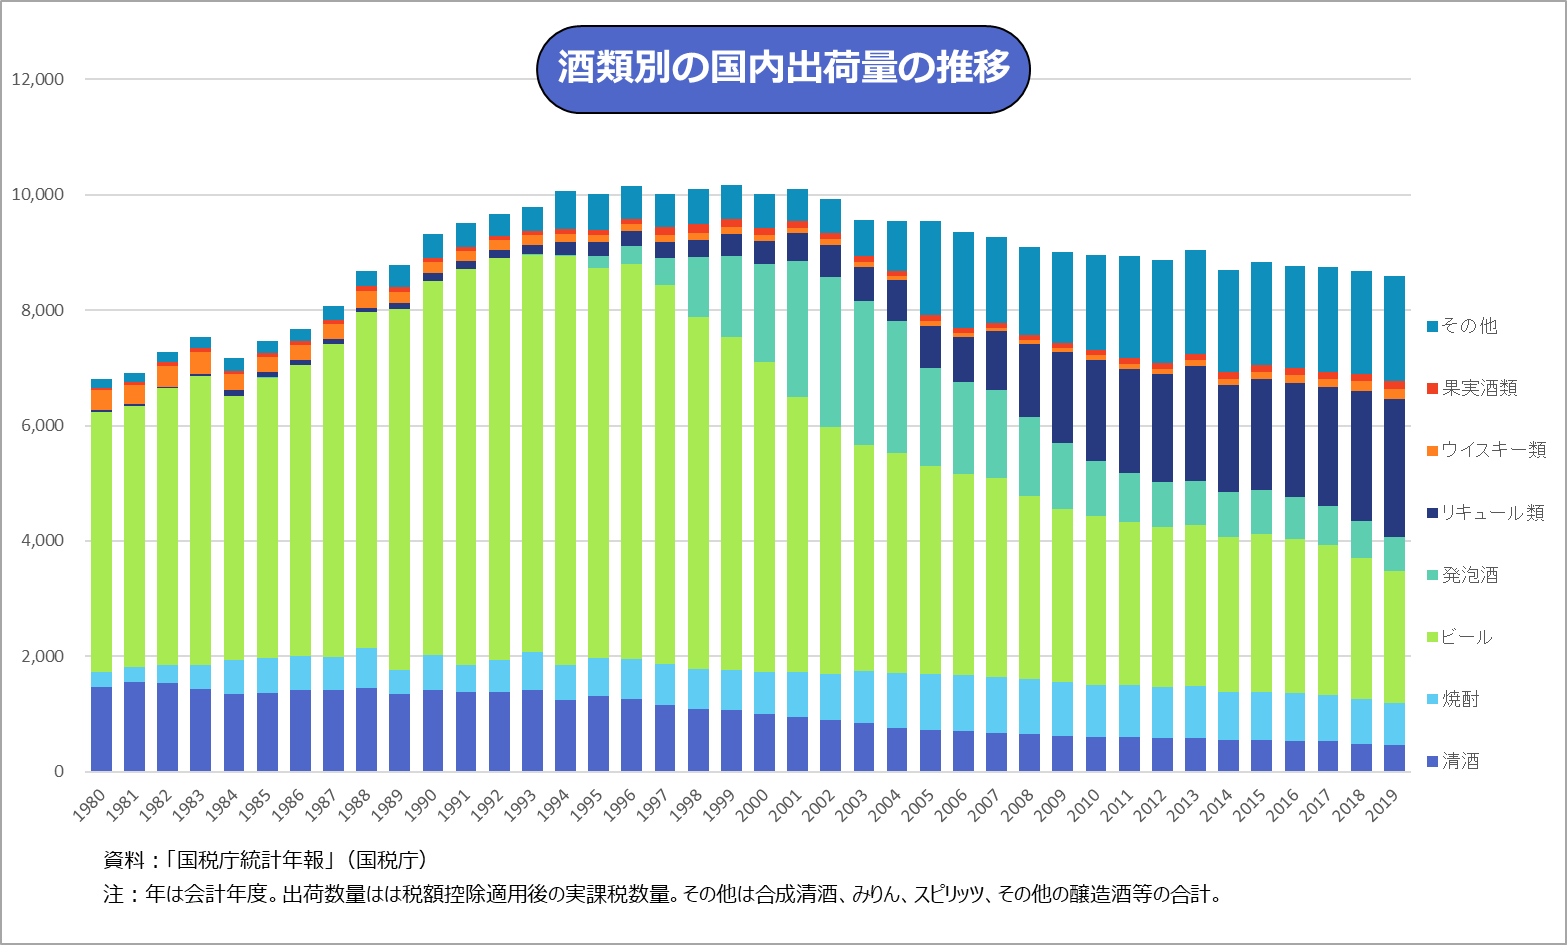 酒類別の国内出荷量の推移（1980年から2019年まで）